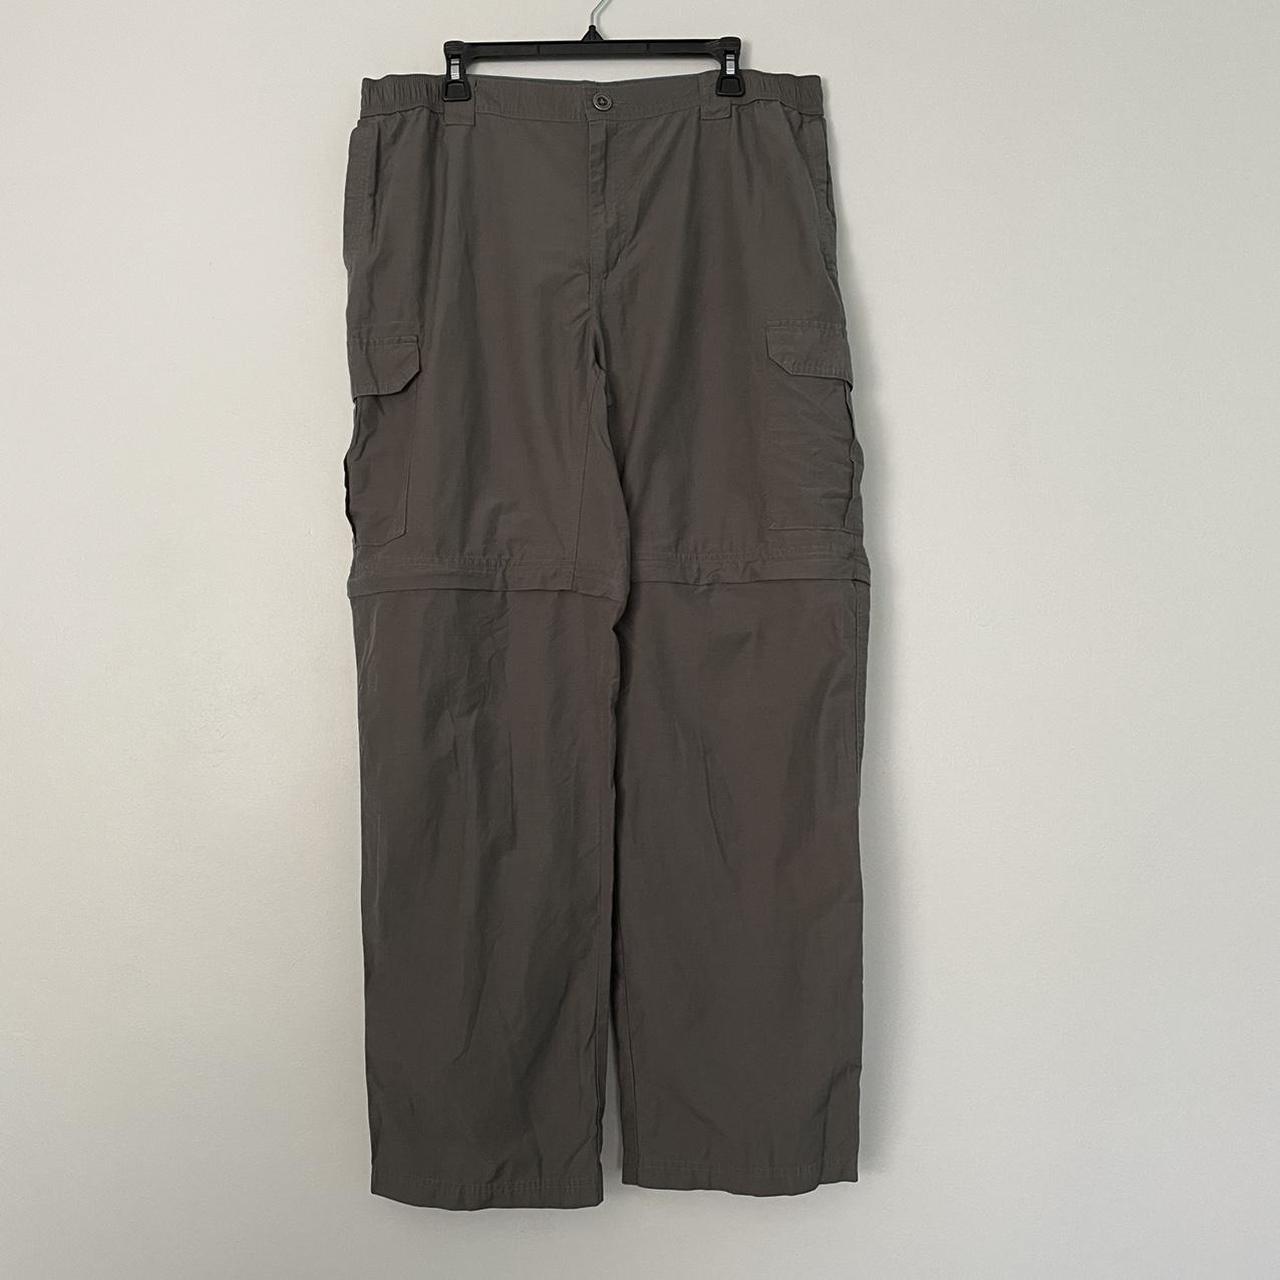 Product Image 1 - Columbia Mens Convertible Pants Shorts